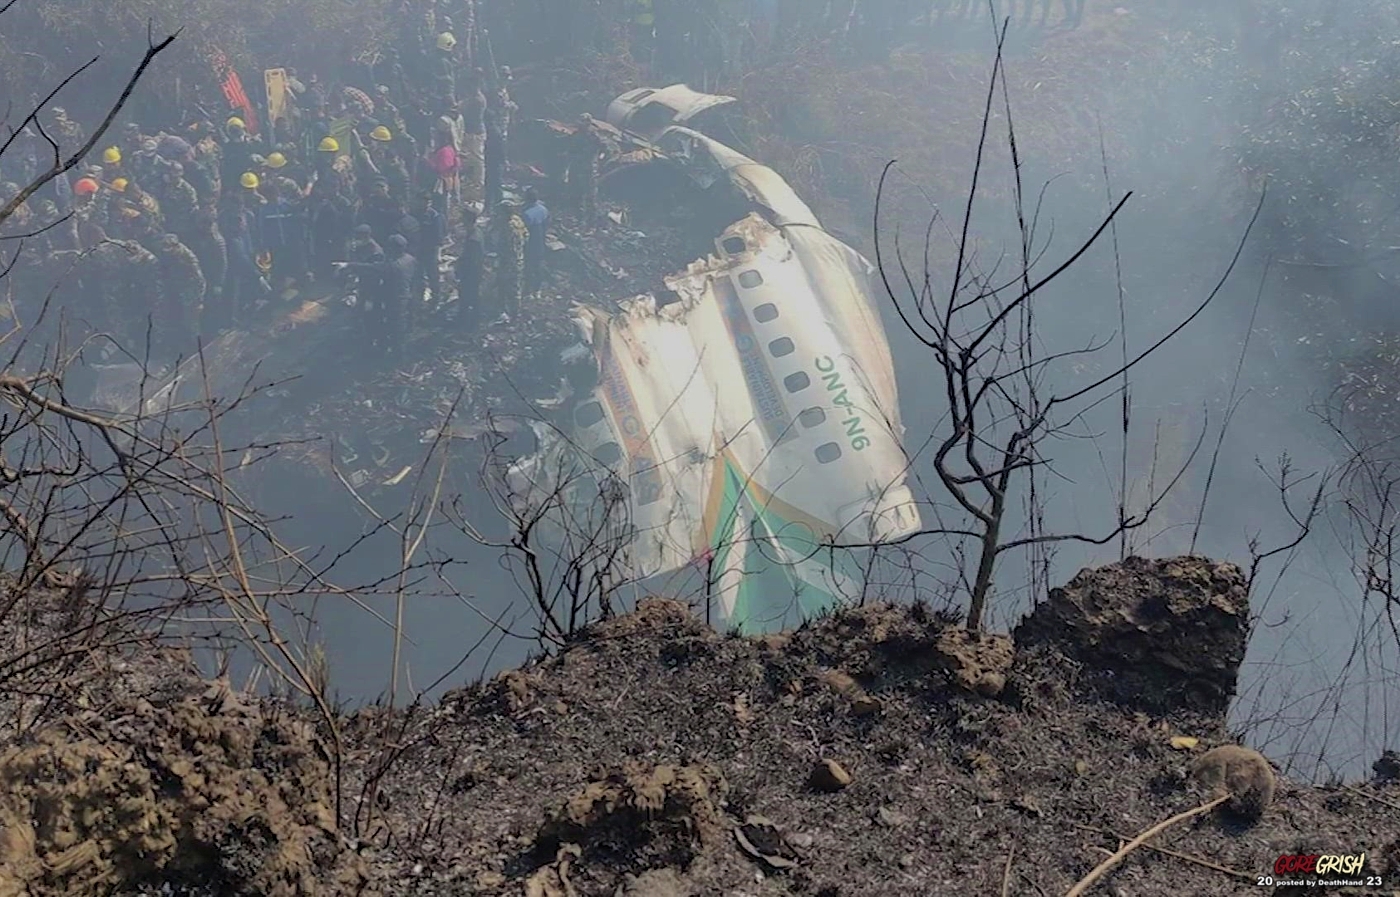 DH - Nepal Plane Crash - Jan 15 2023 - 3.jpg